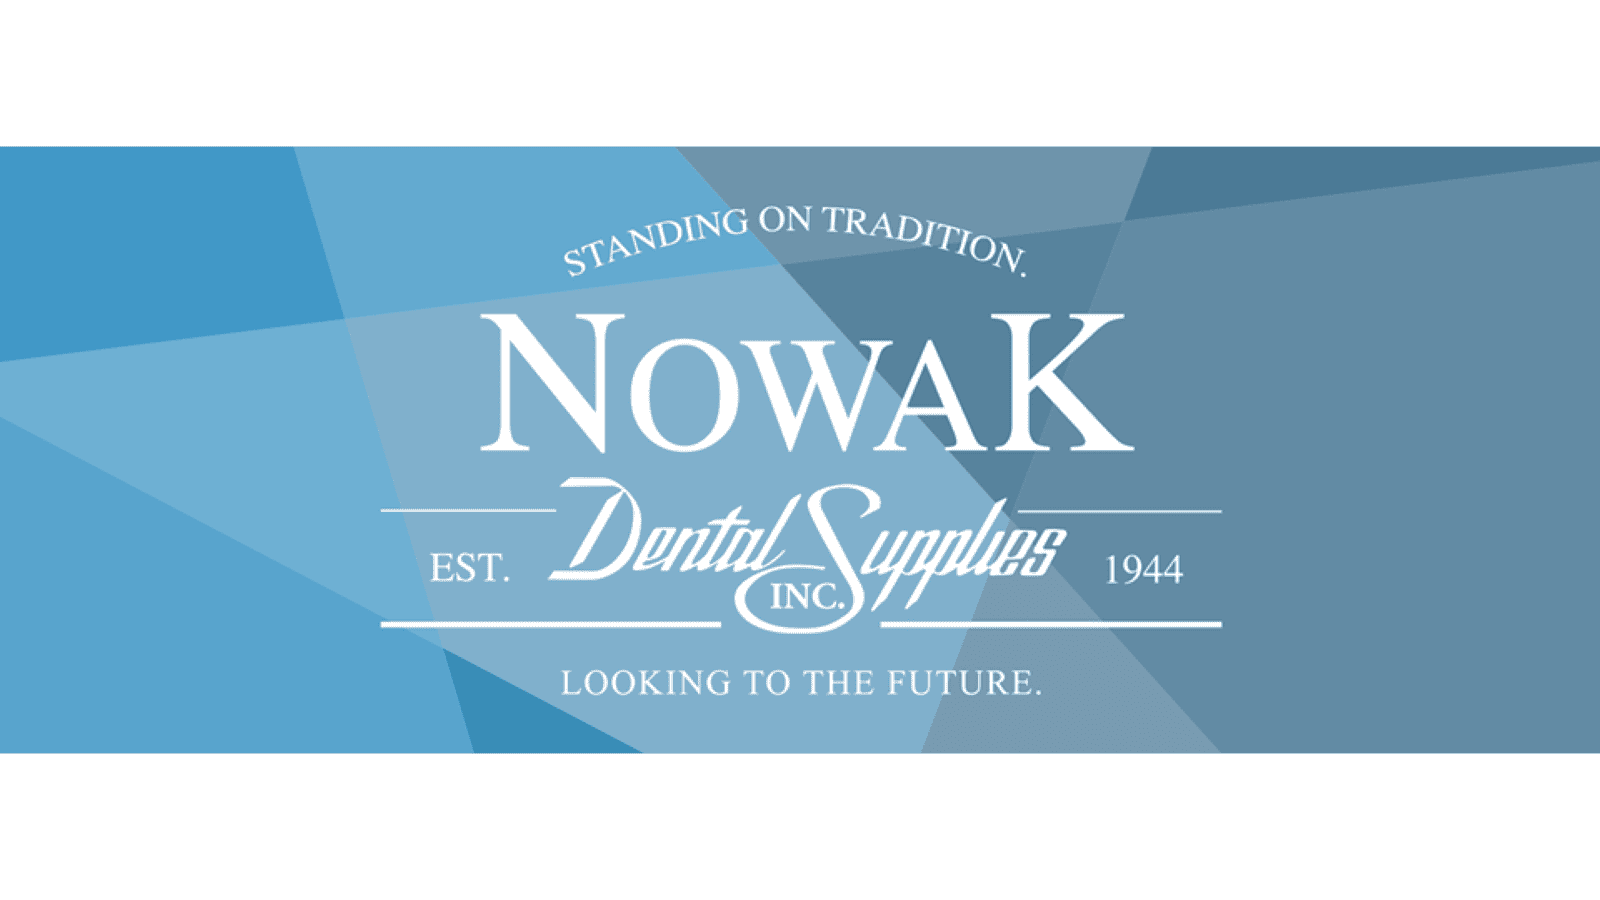 Novak Dental Supplies